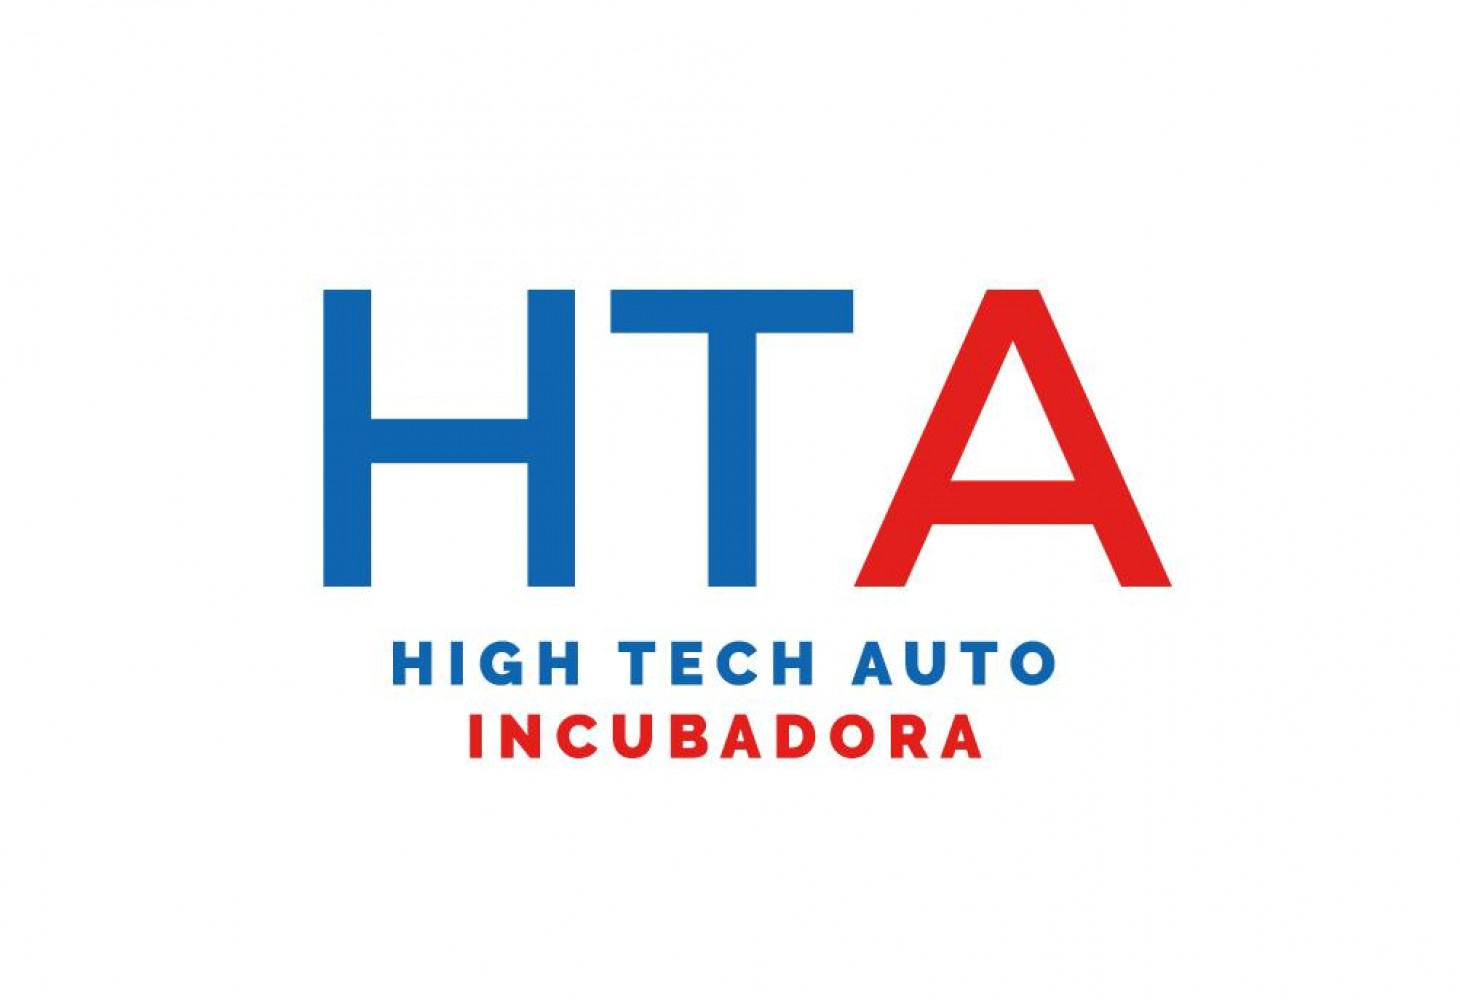 La incubadora High Tech Auto de Galicia. Proyectos seleccionados